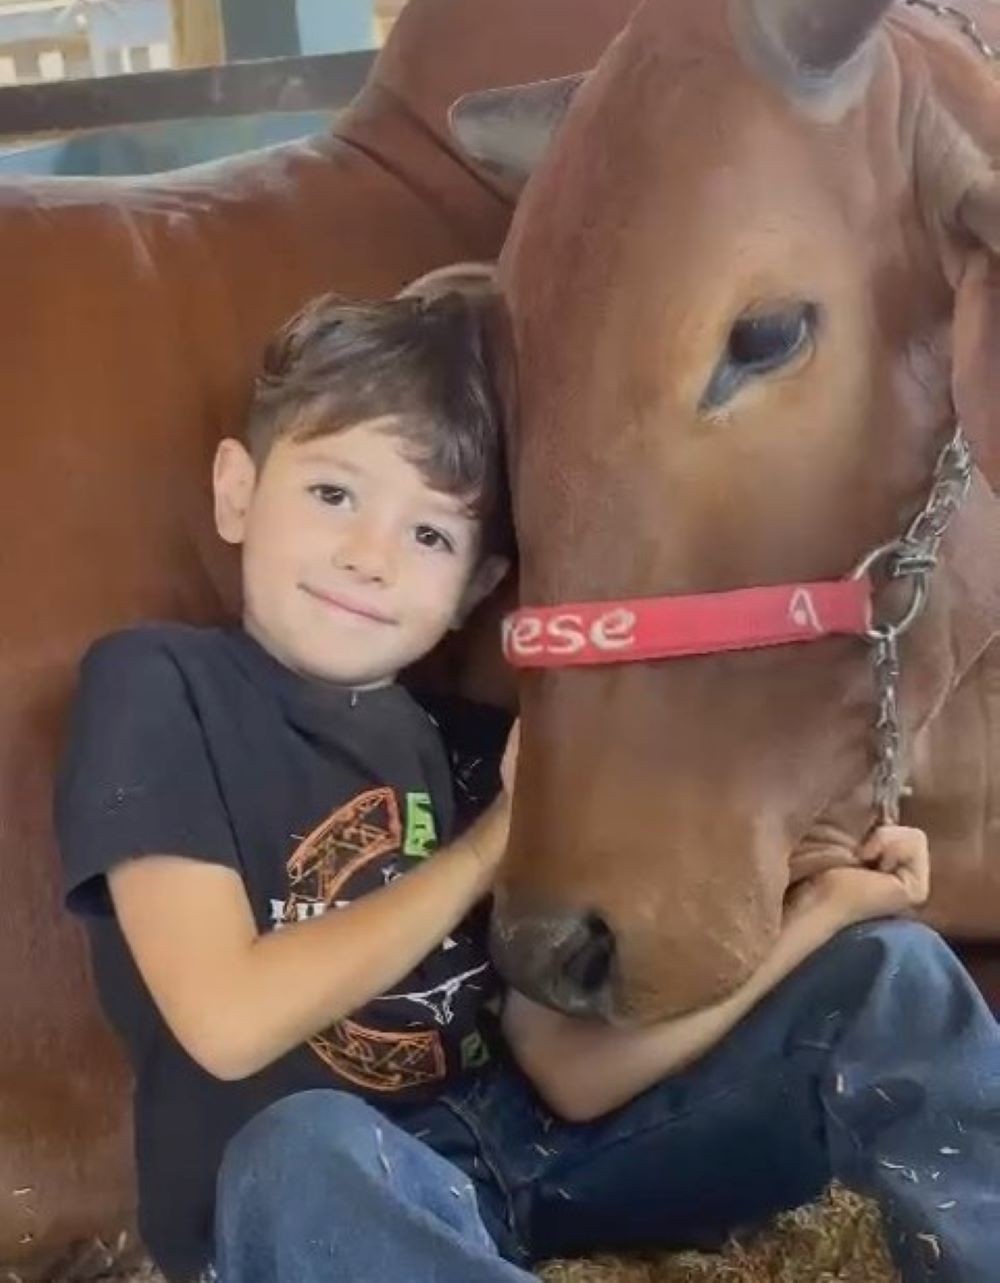 Amizade entre menino de 4 anos e vaca encanta visitantes da ExpoZebu, em Uberaba; veja vídeo